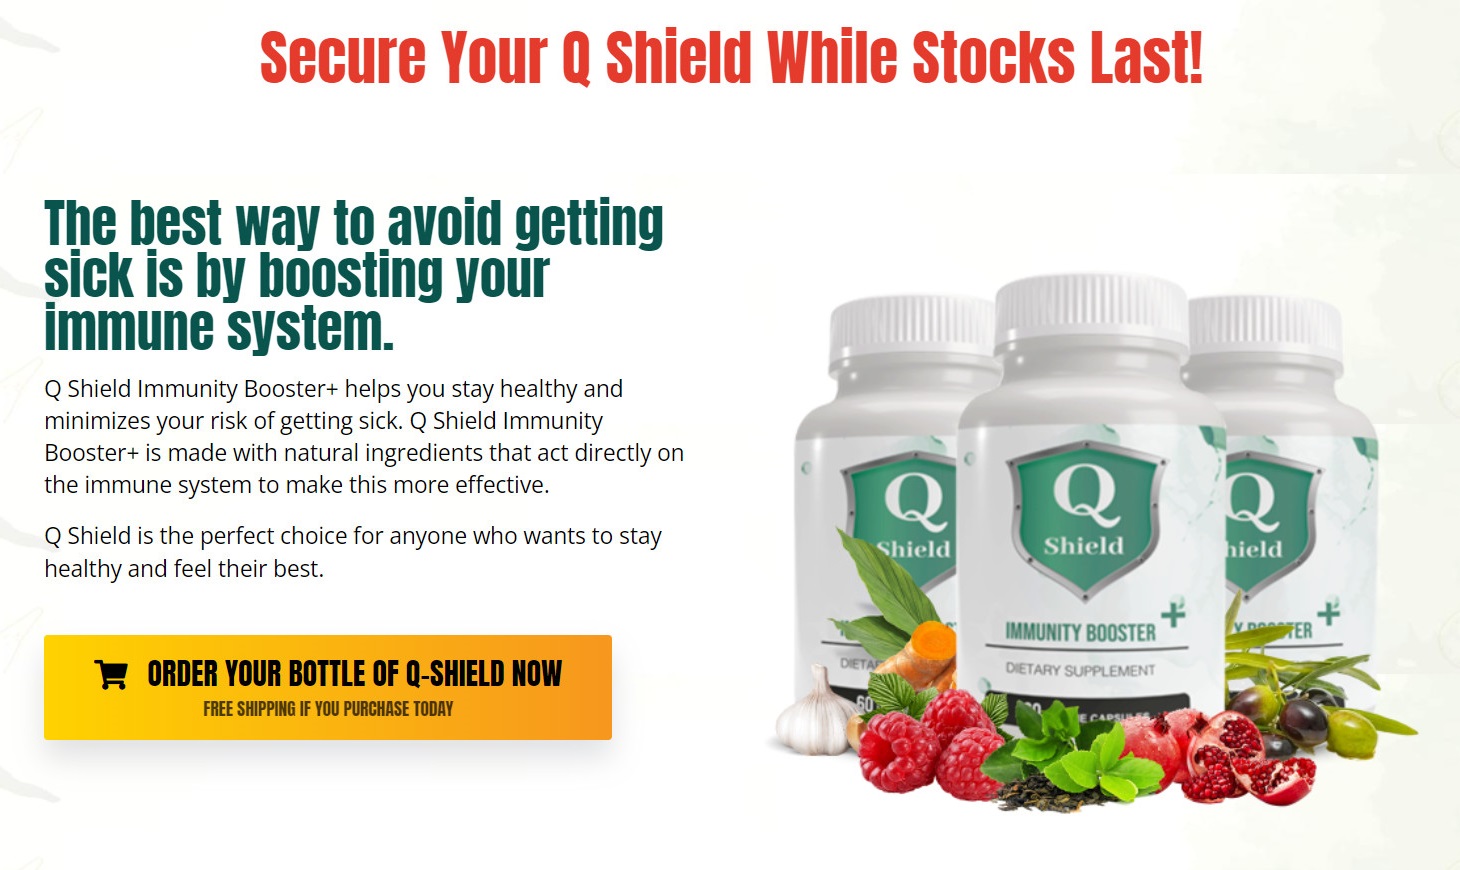 Q Shield Immunity Booster 2